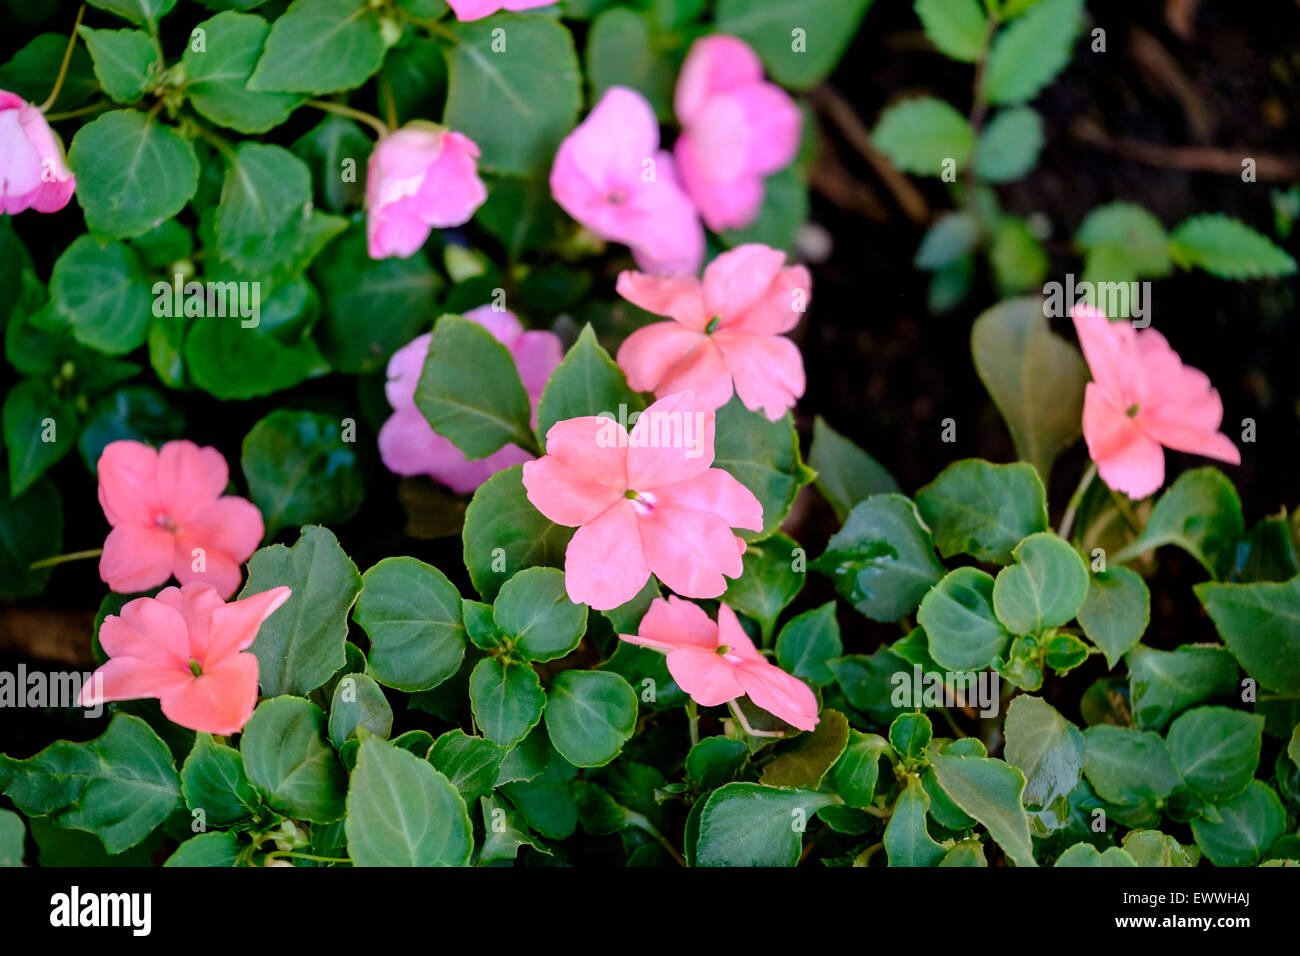 Impatiens, Korallen und rosa Farben in einem schattigen Beet. USA. Stockfoto